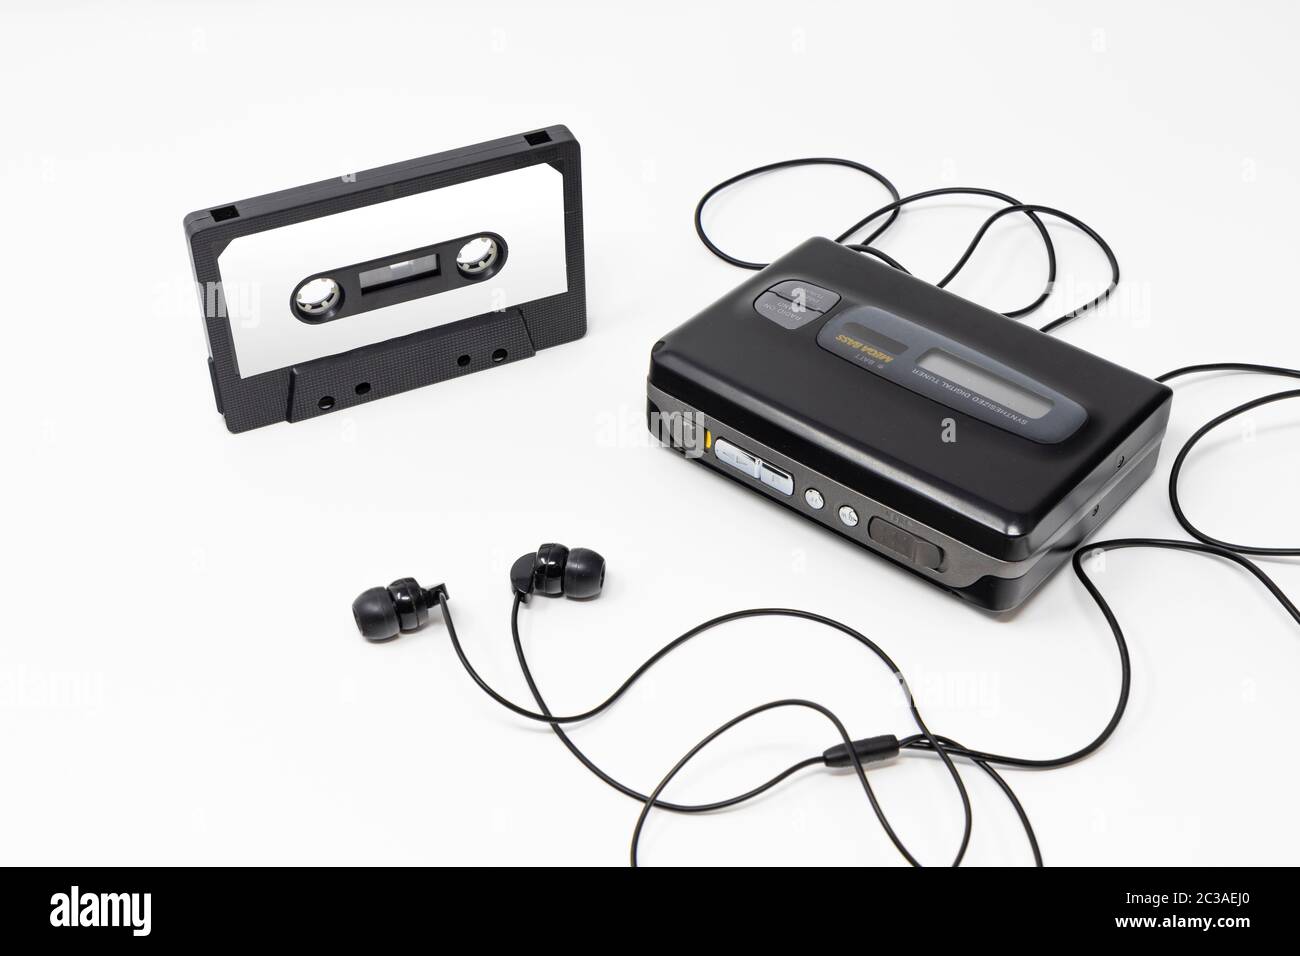 Cassettes audio - C299 Ancien lecteur cassette audio - vintage - Walkman